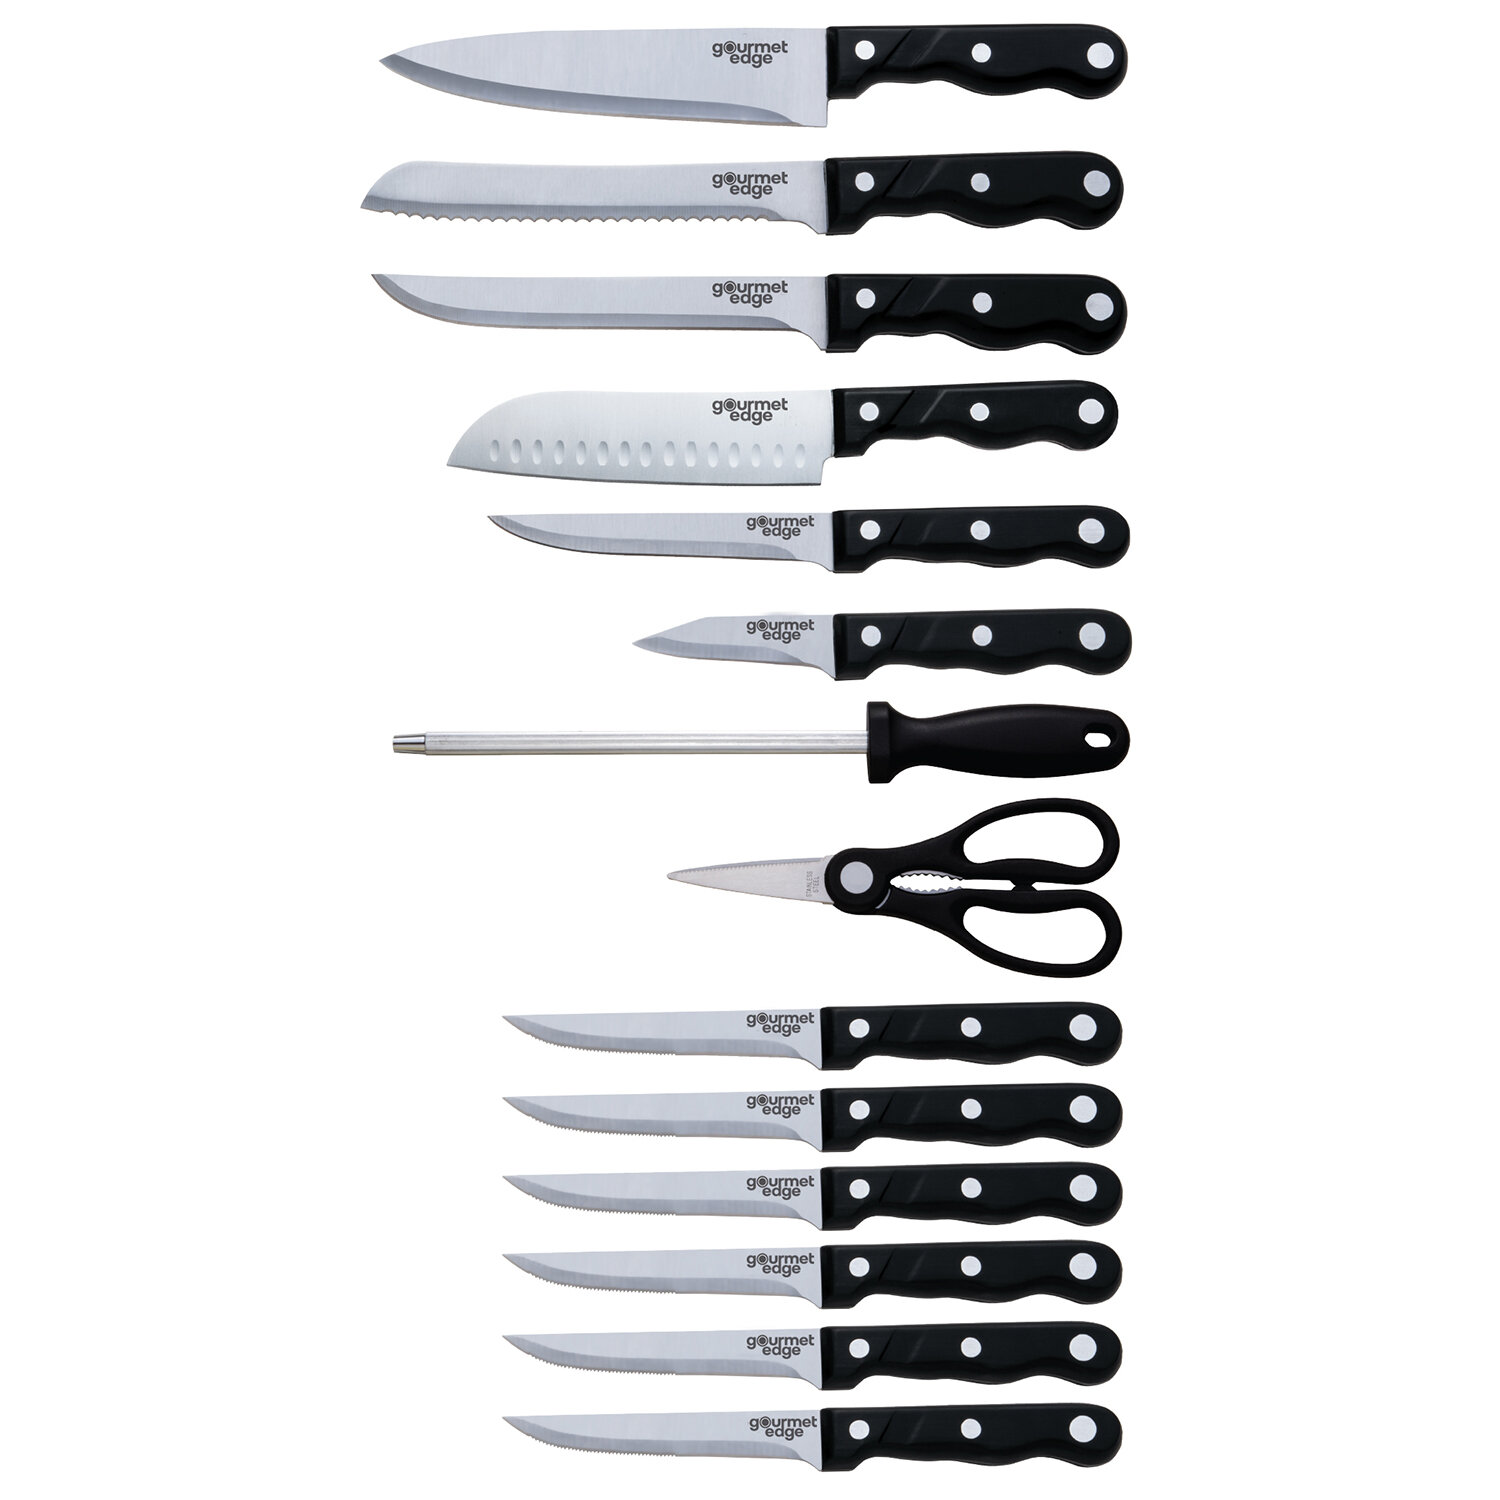 https://assets.wfcdn.com/im/49330365/compr-r85/1490/149052279/gourmet-edge-15-piece-high-carbon-stainless-steel-chefs-knife.jpg